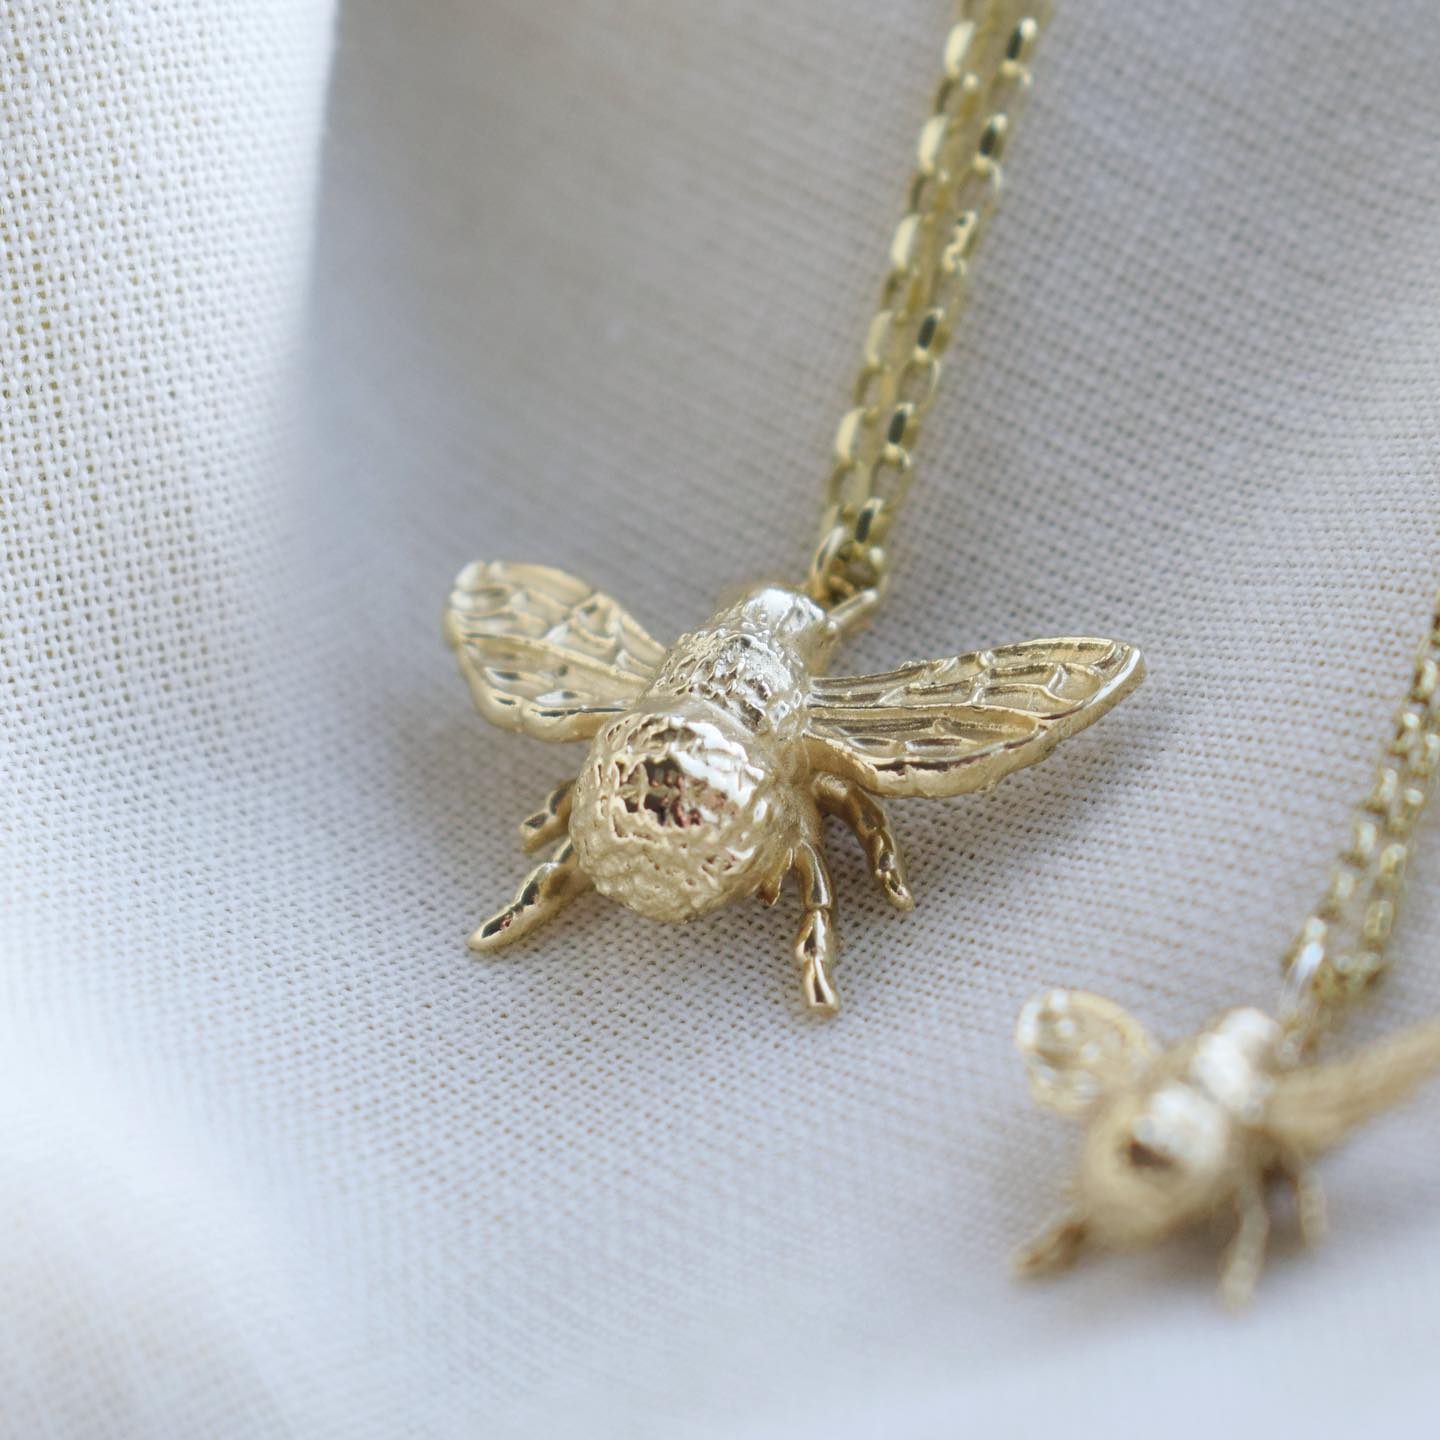 bumblebee necklace gold | Portobello Lane